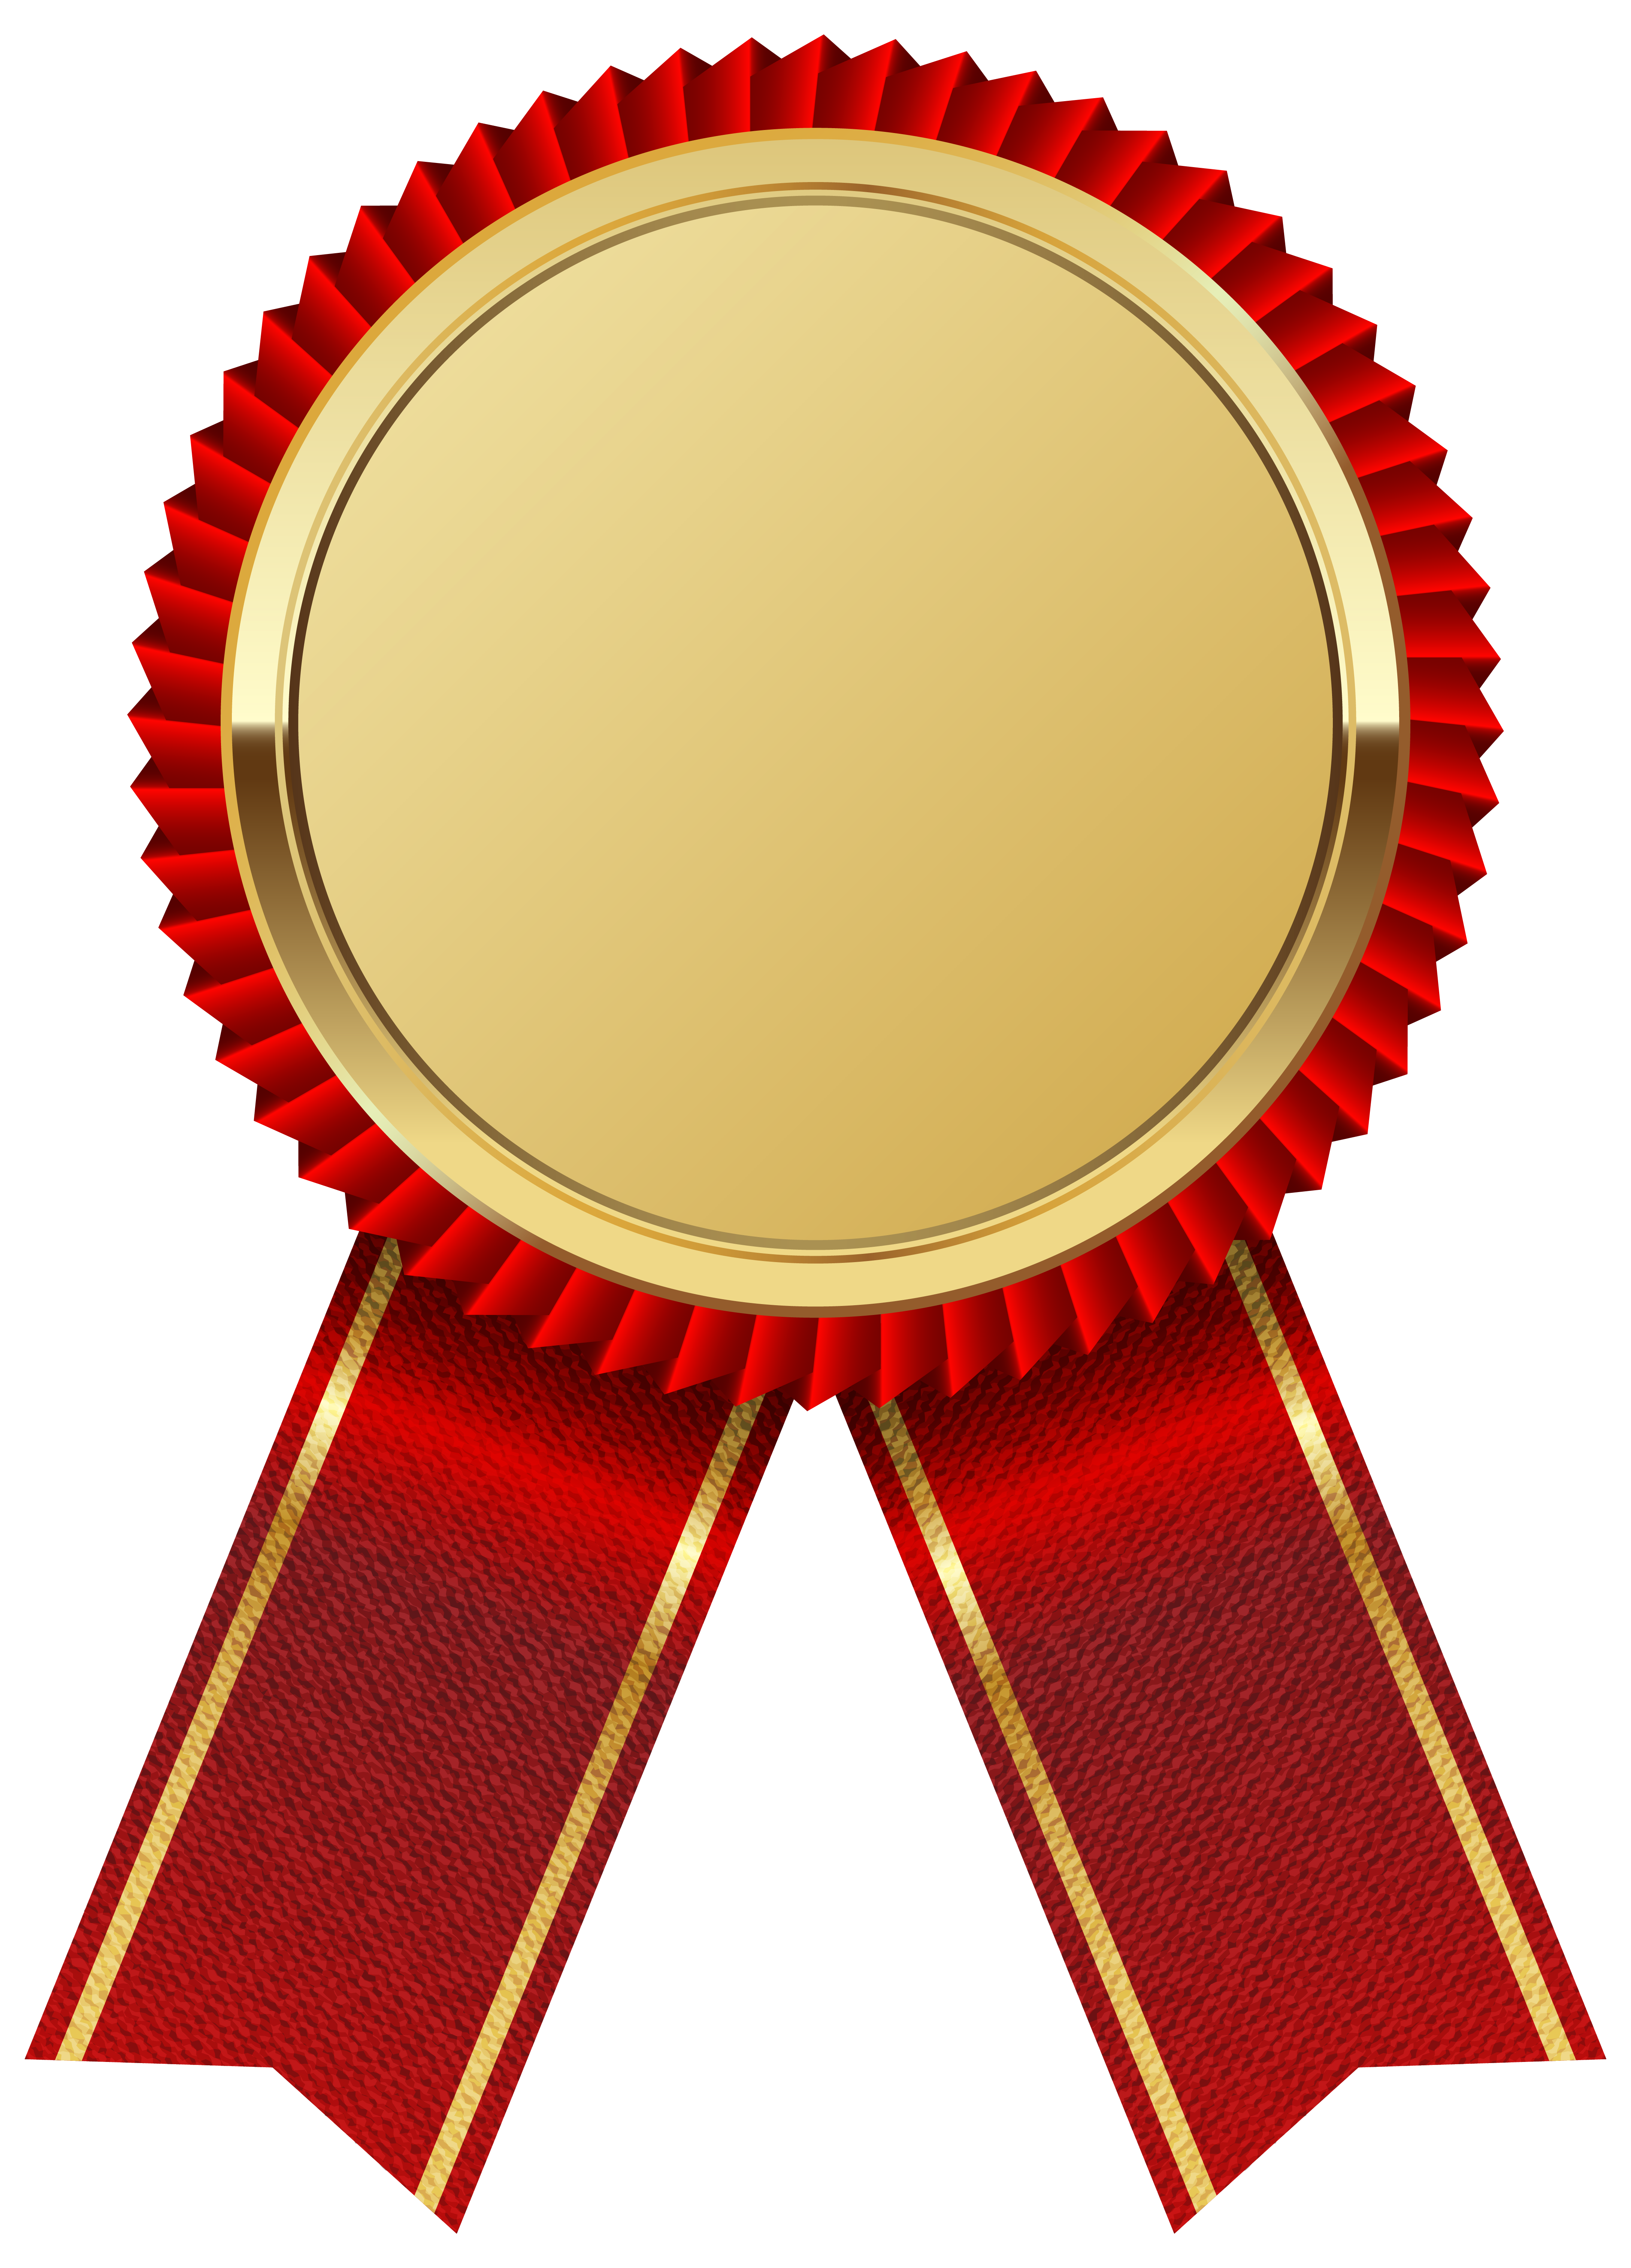 Gold Medal Clipart; Gold Meda - Gold Medal Clipart